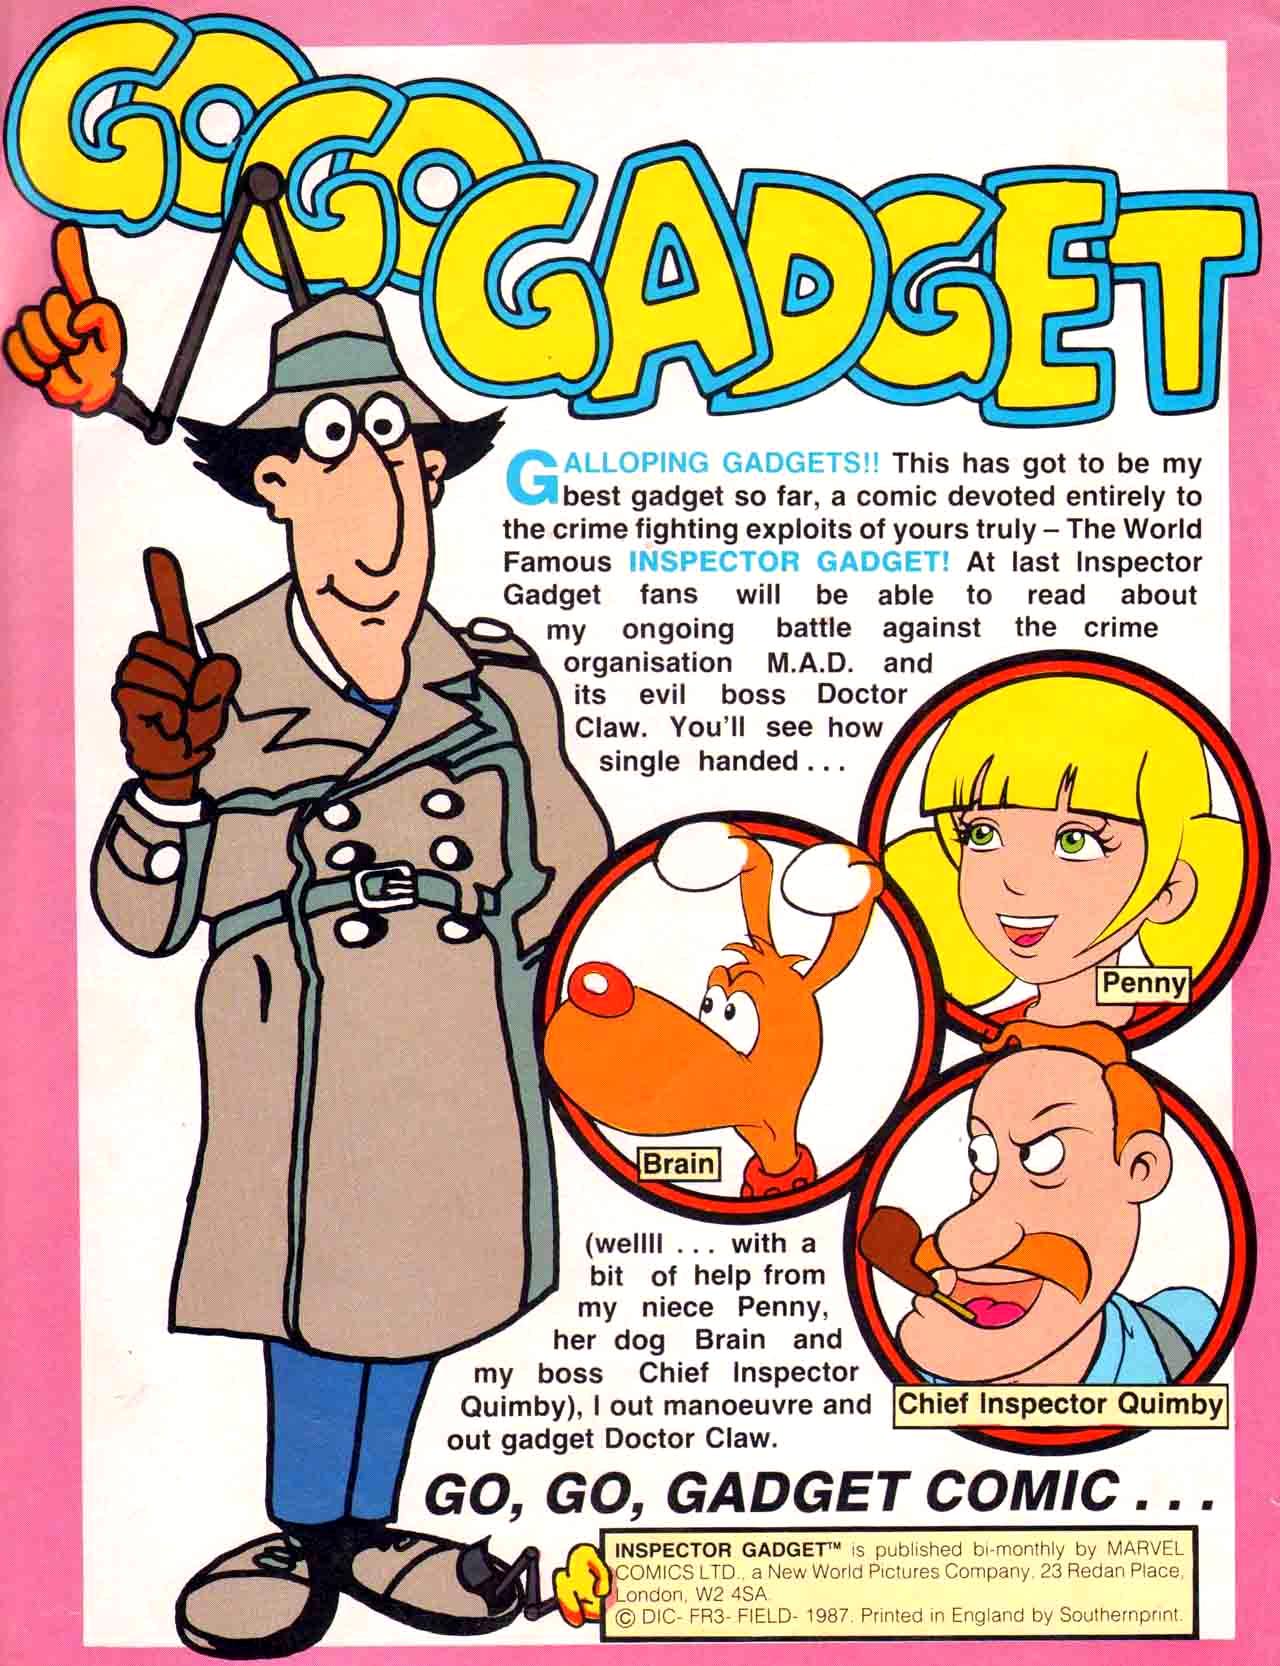 Inspector Gadget Cartoon Porn Xxx - Inspector Gadget Full | Read Inspector Gadget Full comic online in high  quality. Read Full Comic online for free - Read comics online in high  quality .|viewcomiconline.com